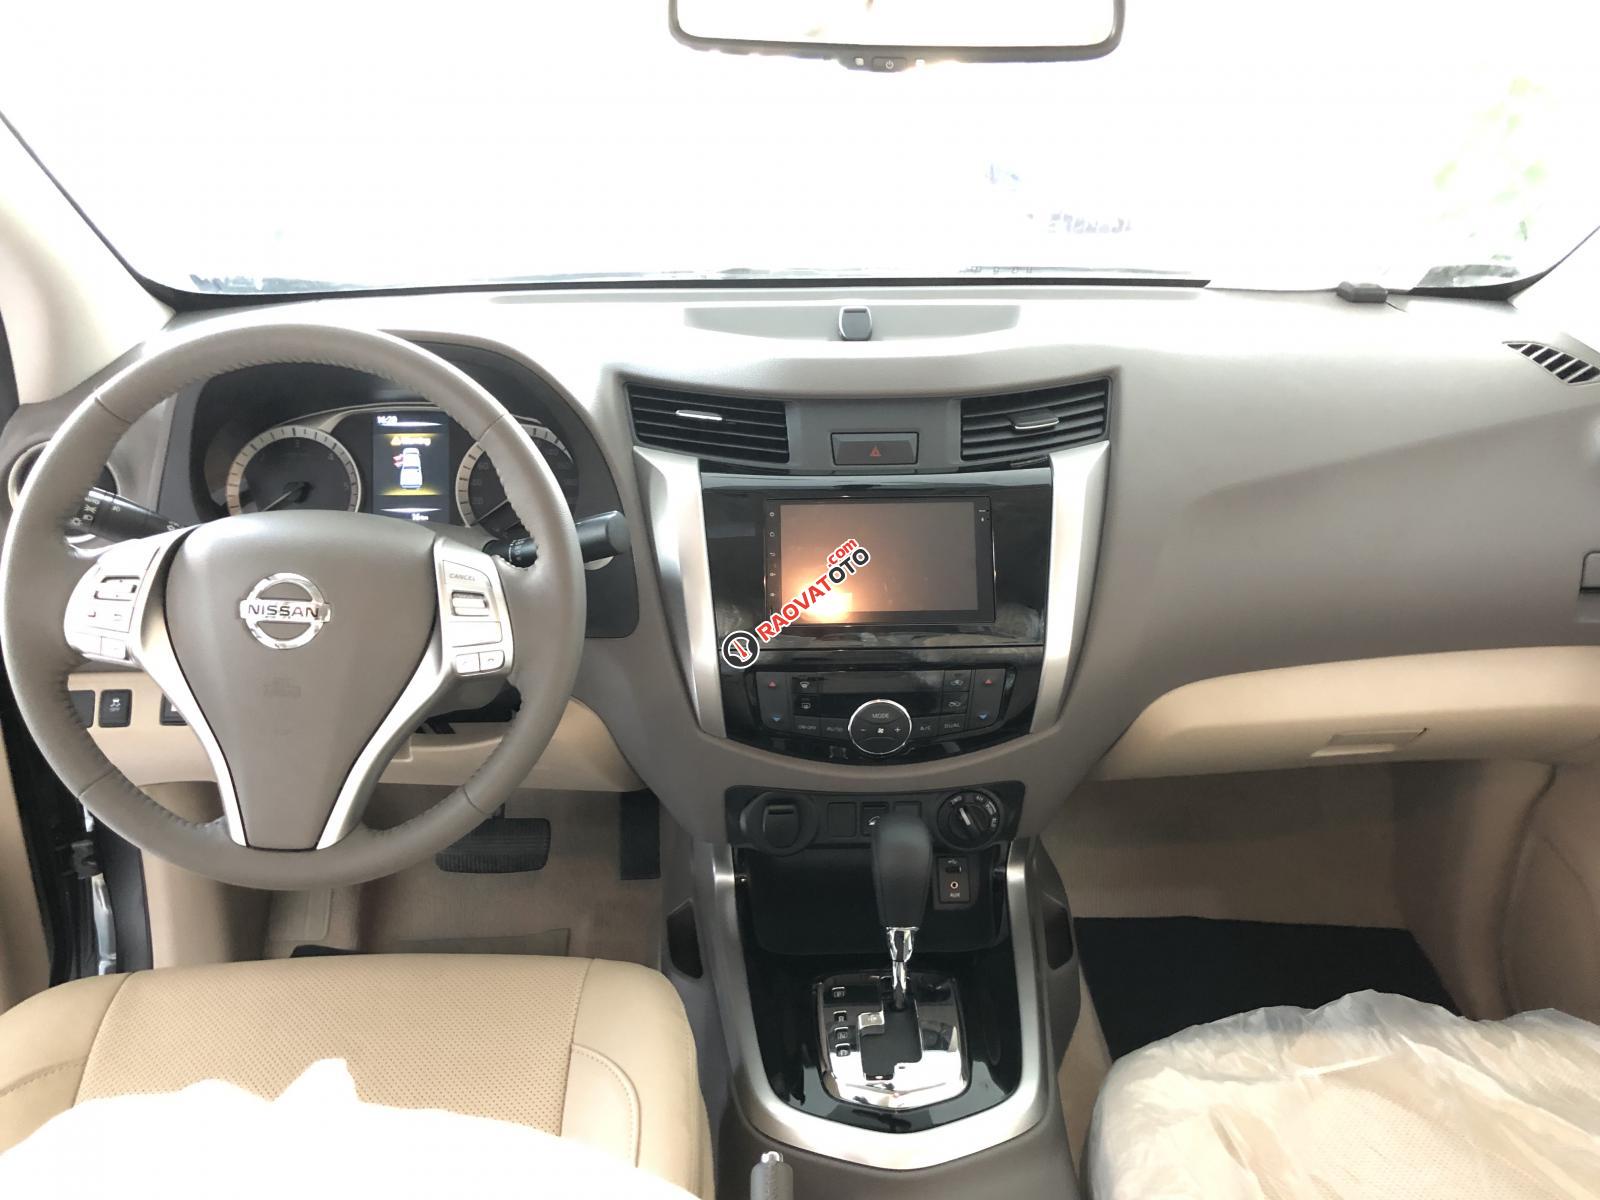 Bán Nissan Navara 2019 siêu hot, khuyến mãi tháng 8, chỉ từ 630tr đủ xe giao ngay. LH: 0366.470.930-0